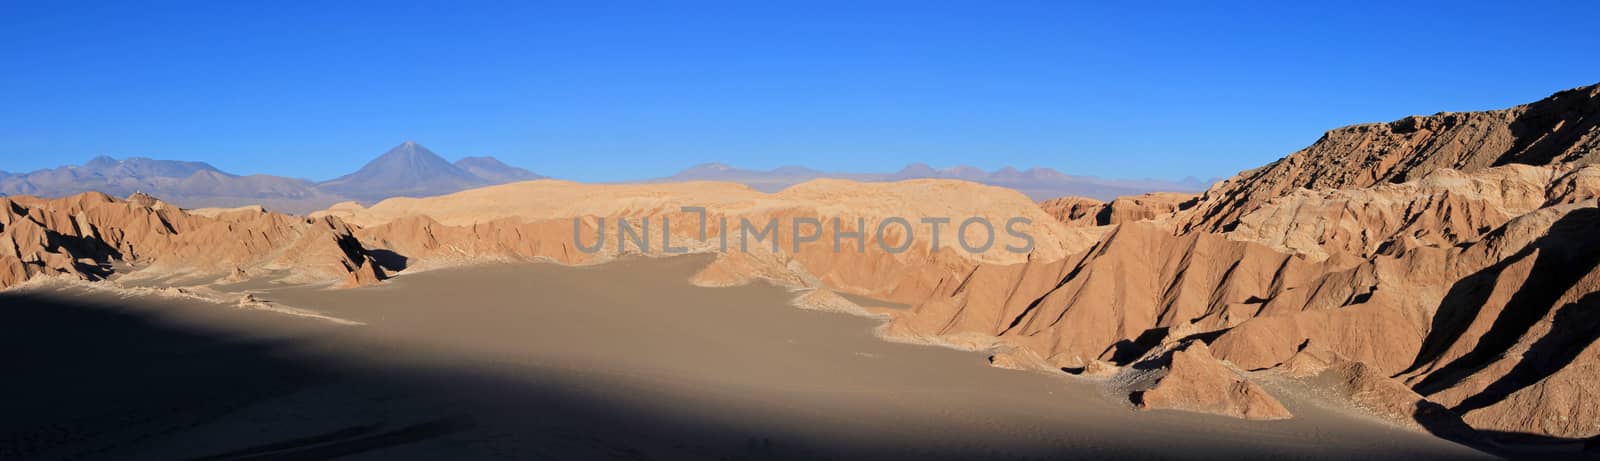 Valle de la Luna, valley of the moon, Atacama desert Chile by cicloco